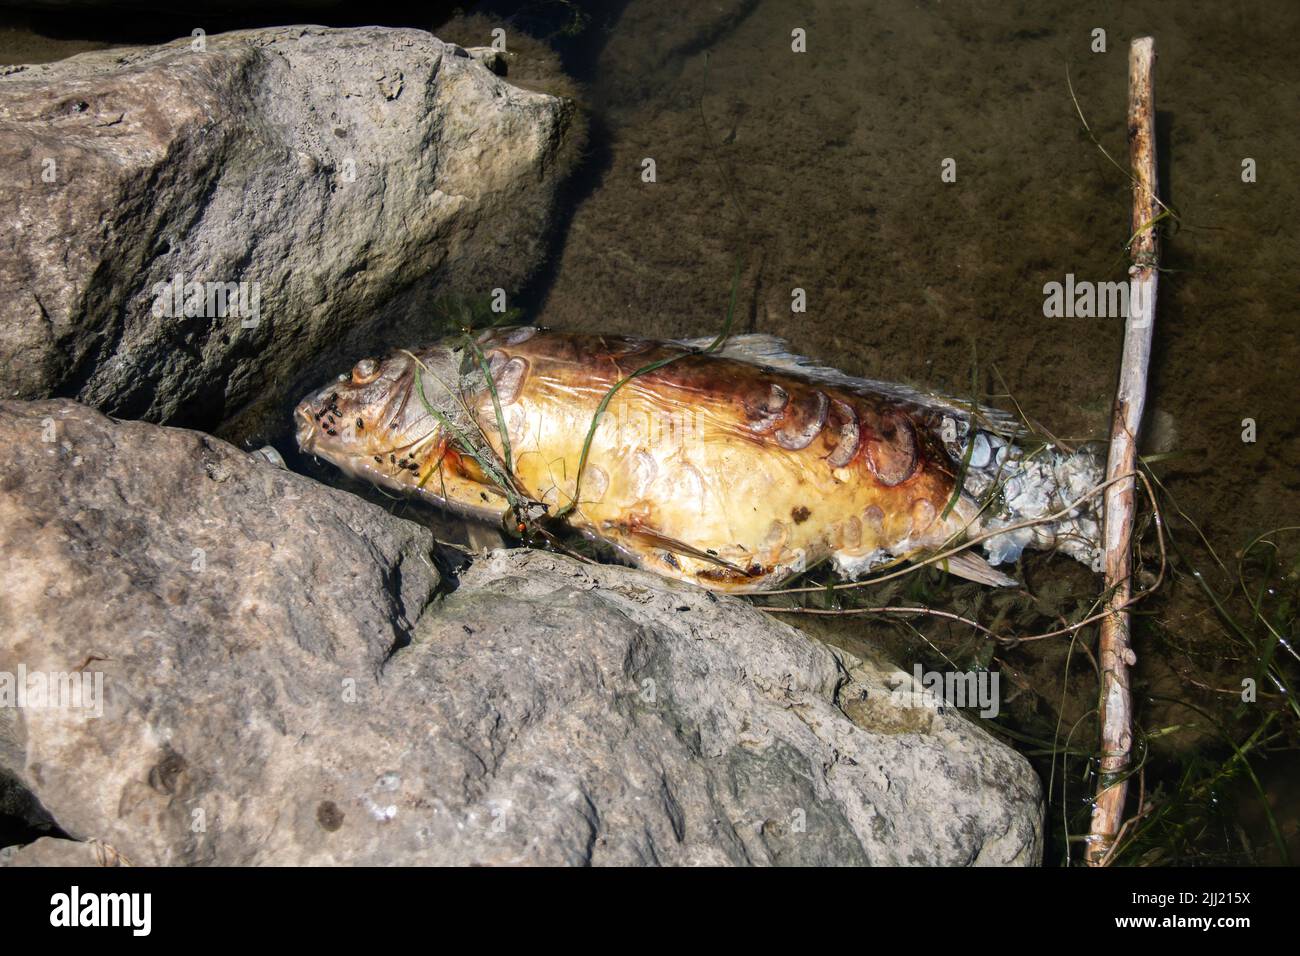 ​ Un pesce morto puzzolente, forse un persico giallo o una carpa comune, lavato lungo le rocce di una marina dell'isola di Pelee nel lago Erie. Foto Stock